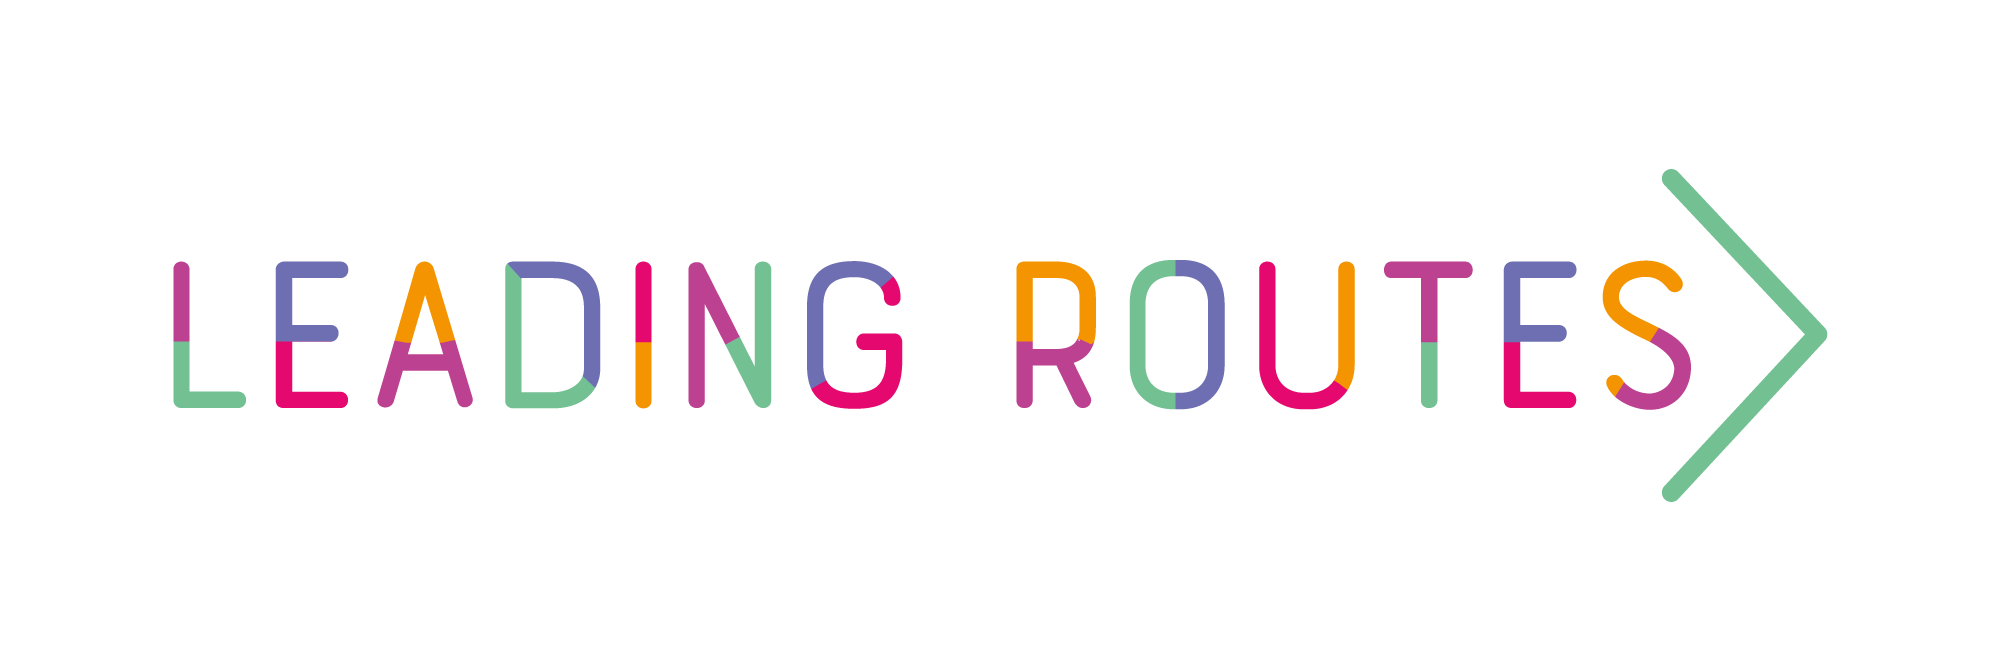 leading_routes_logo_colour.png